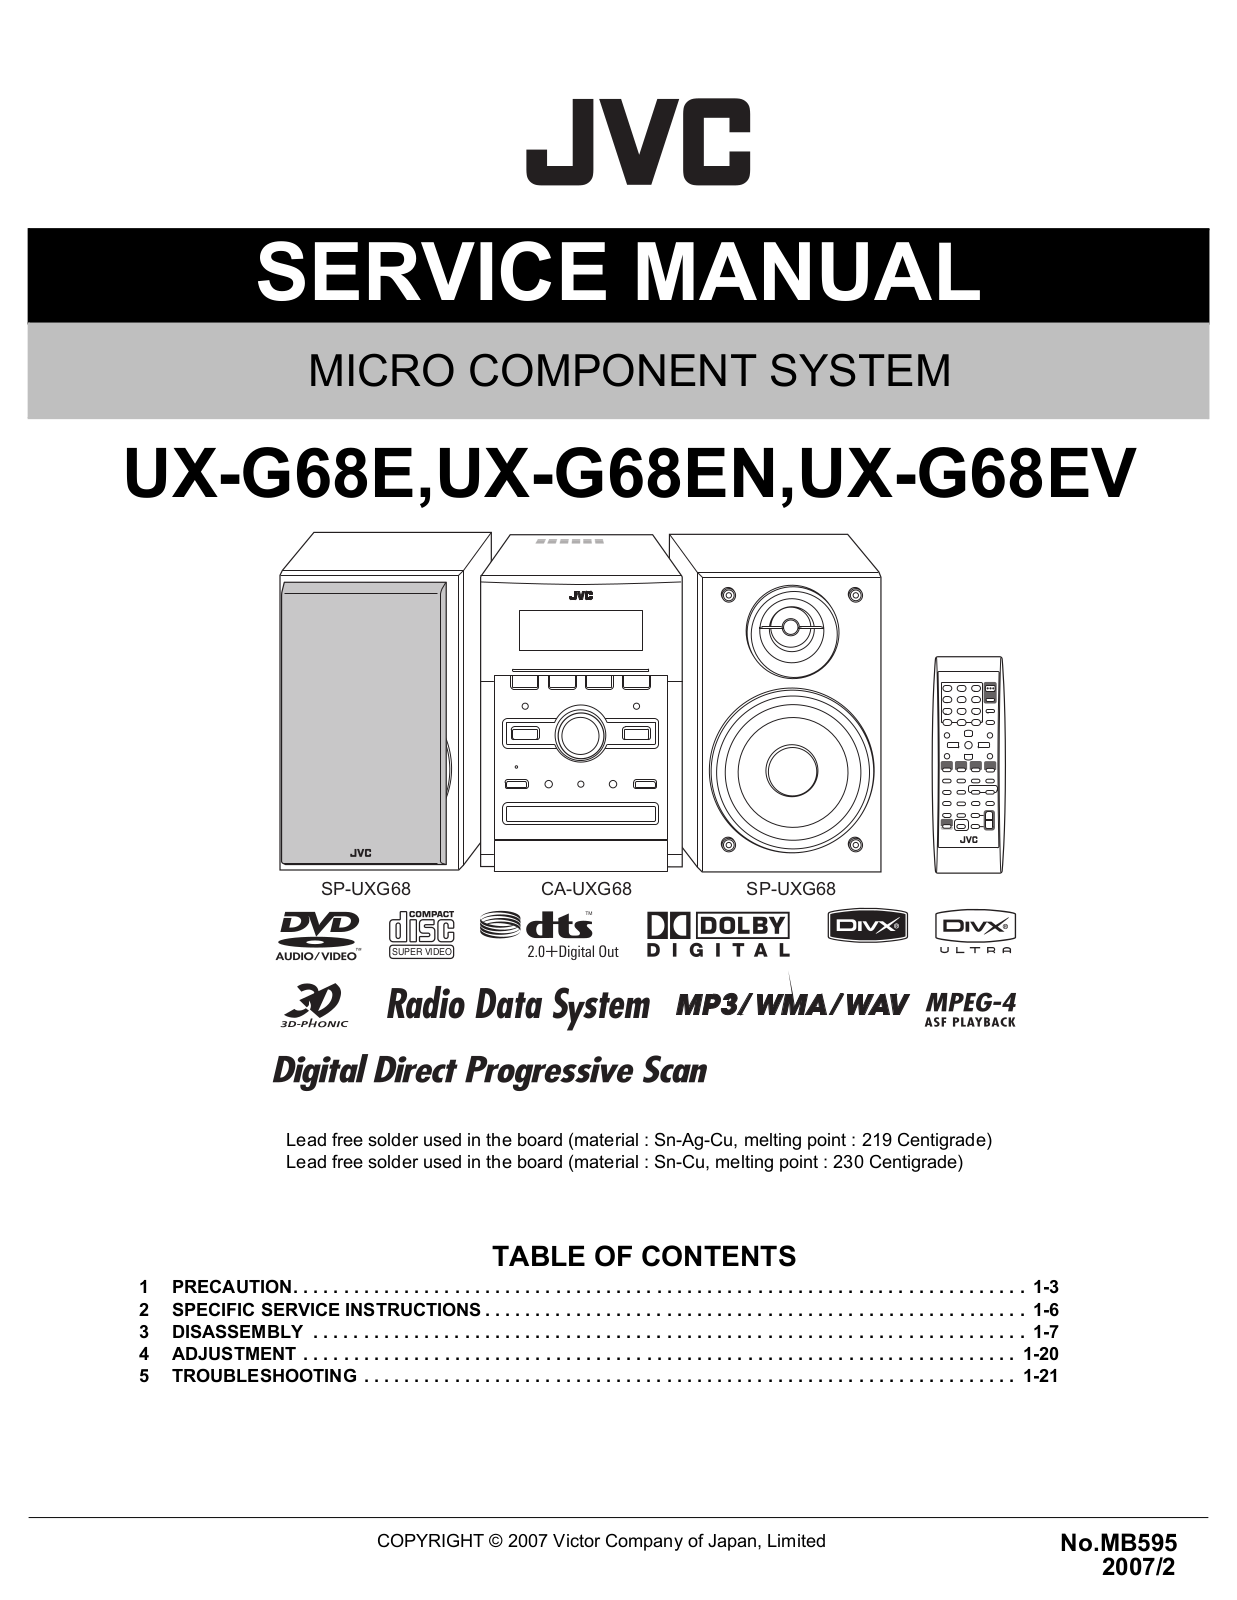 Jvc UX-G68-EV, UX-G68-EN, UX-G68-E Service Manual